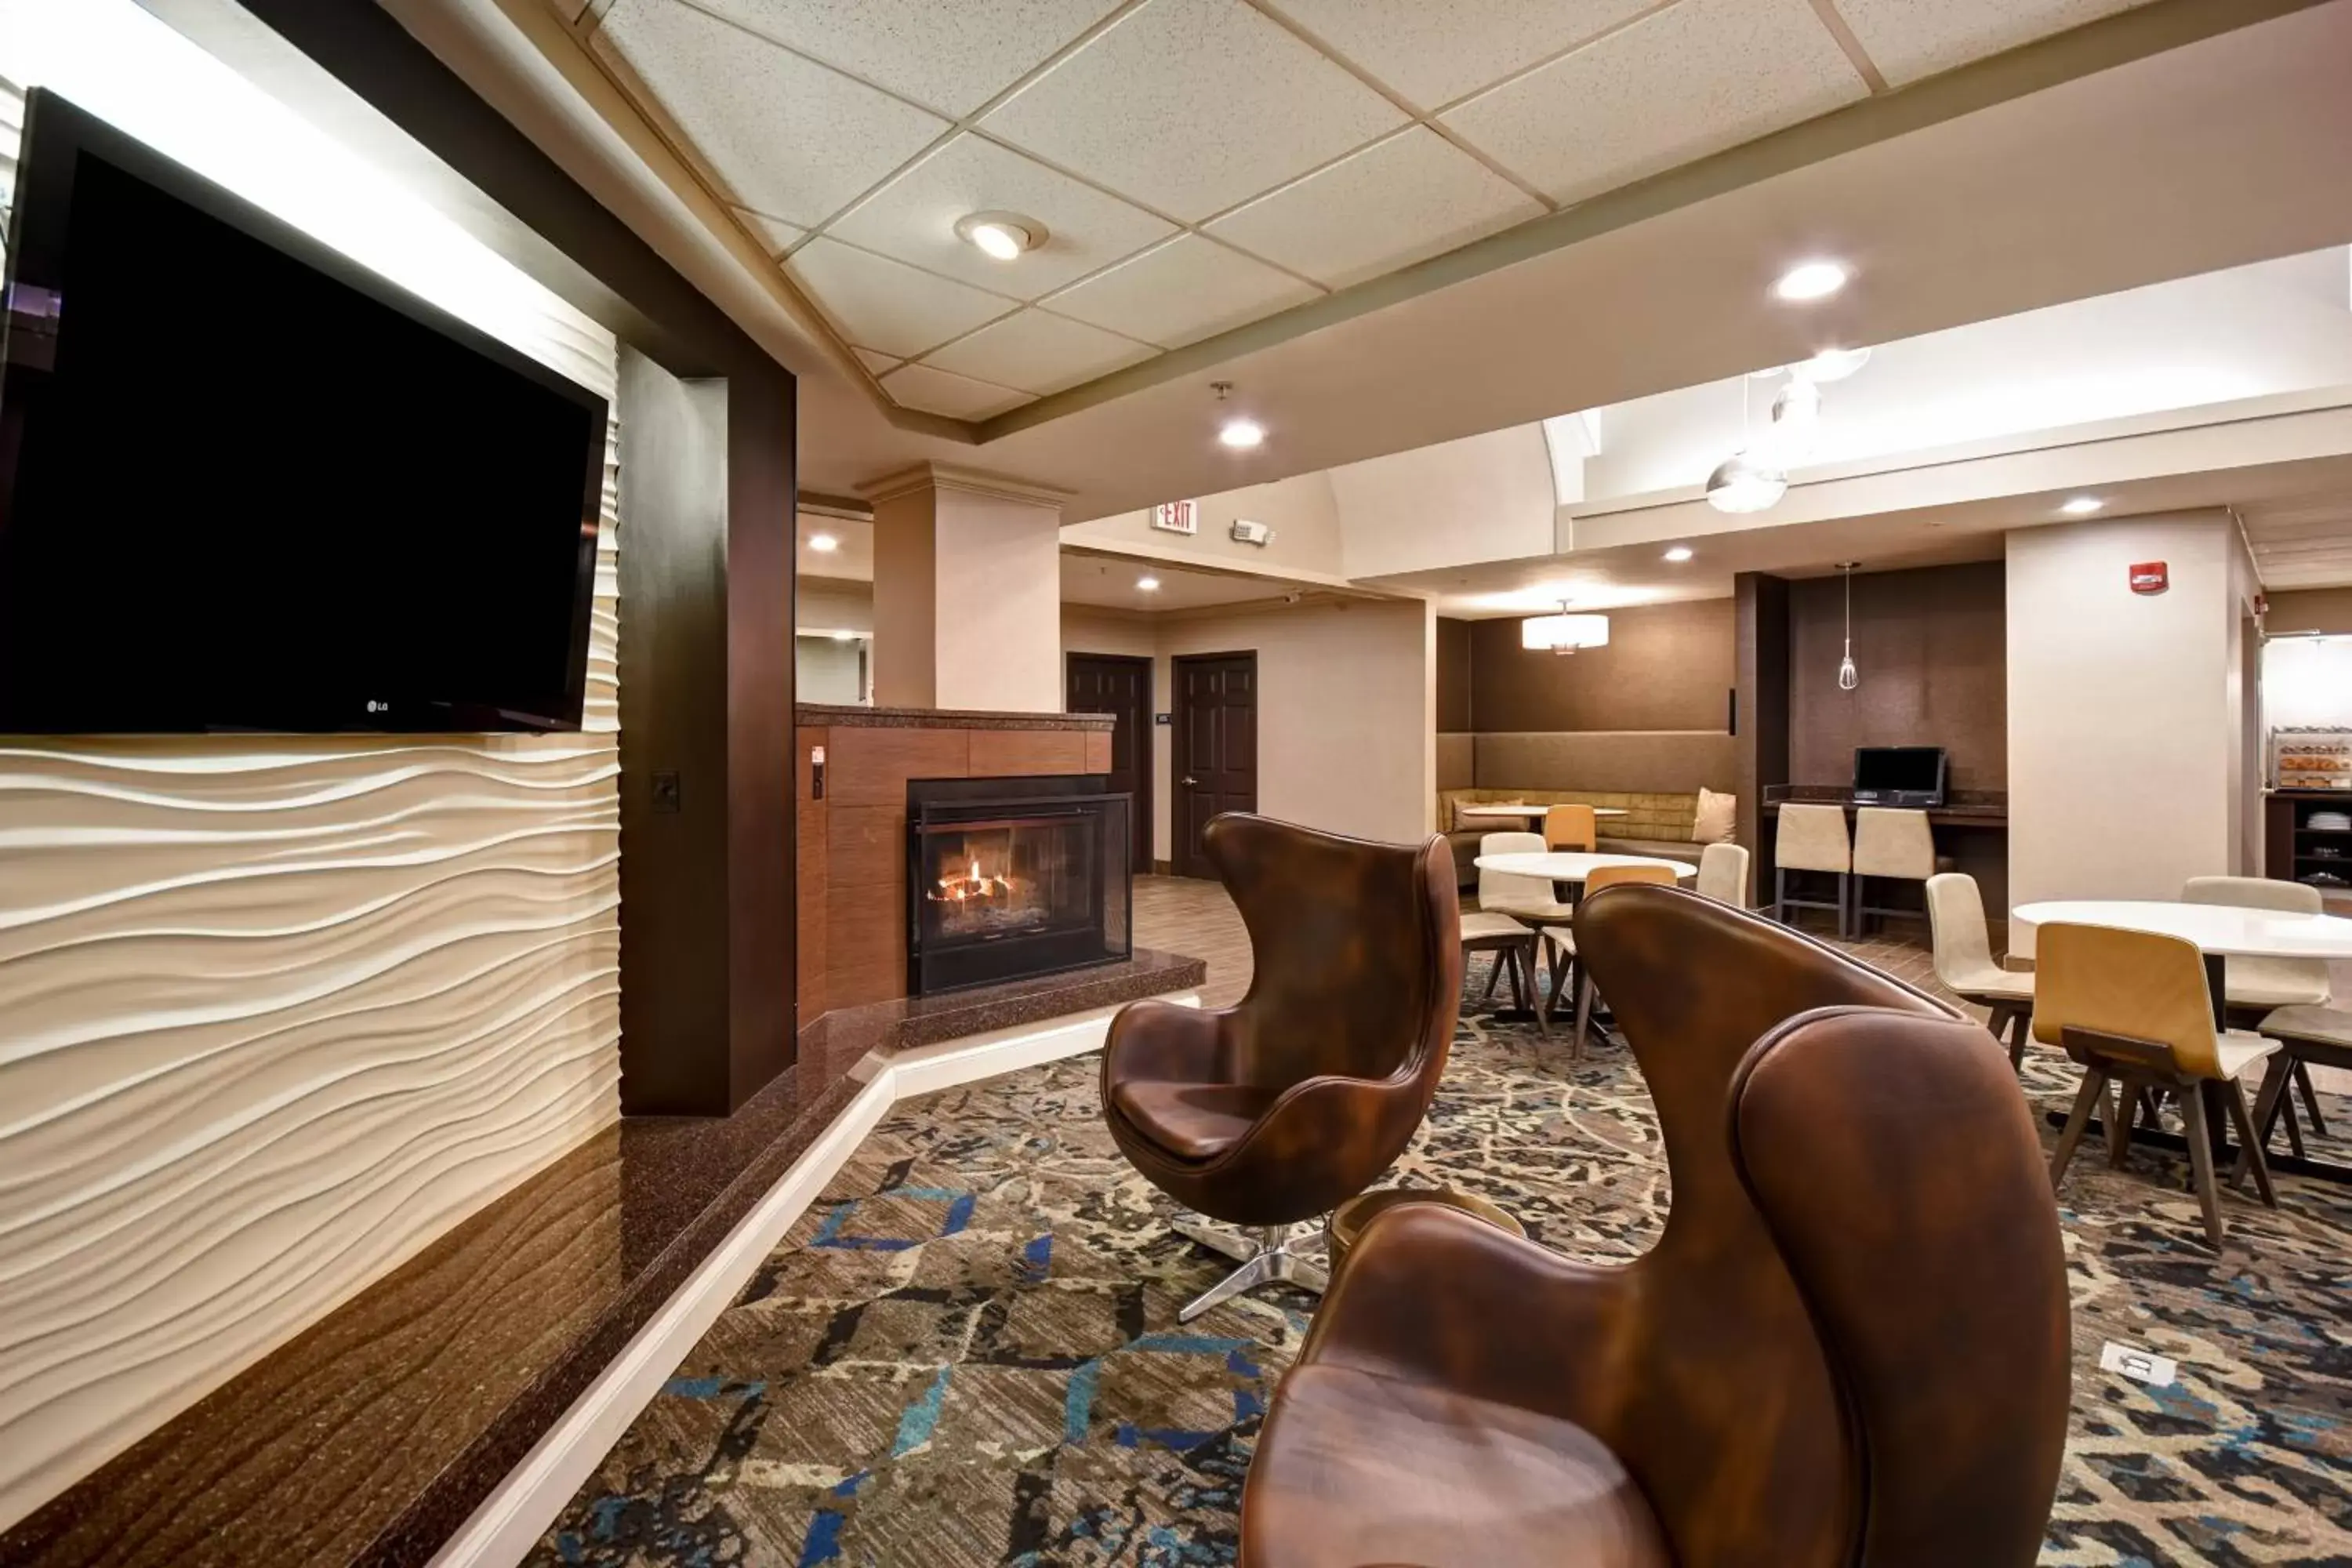 Lobby or reception in Residence Inn by Marriott Dayton Beavercreek